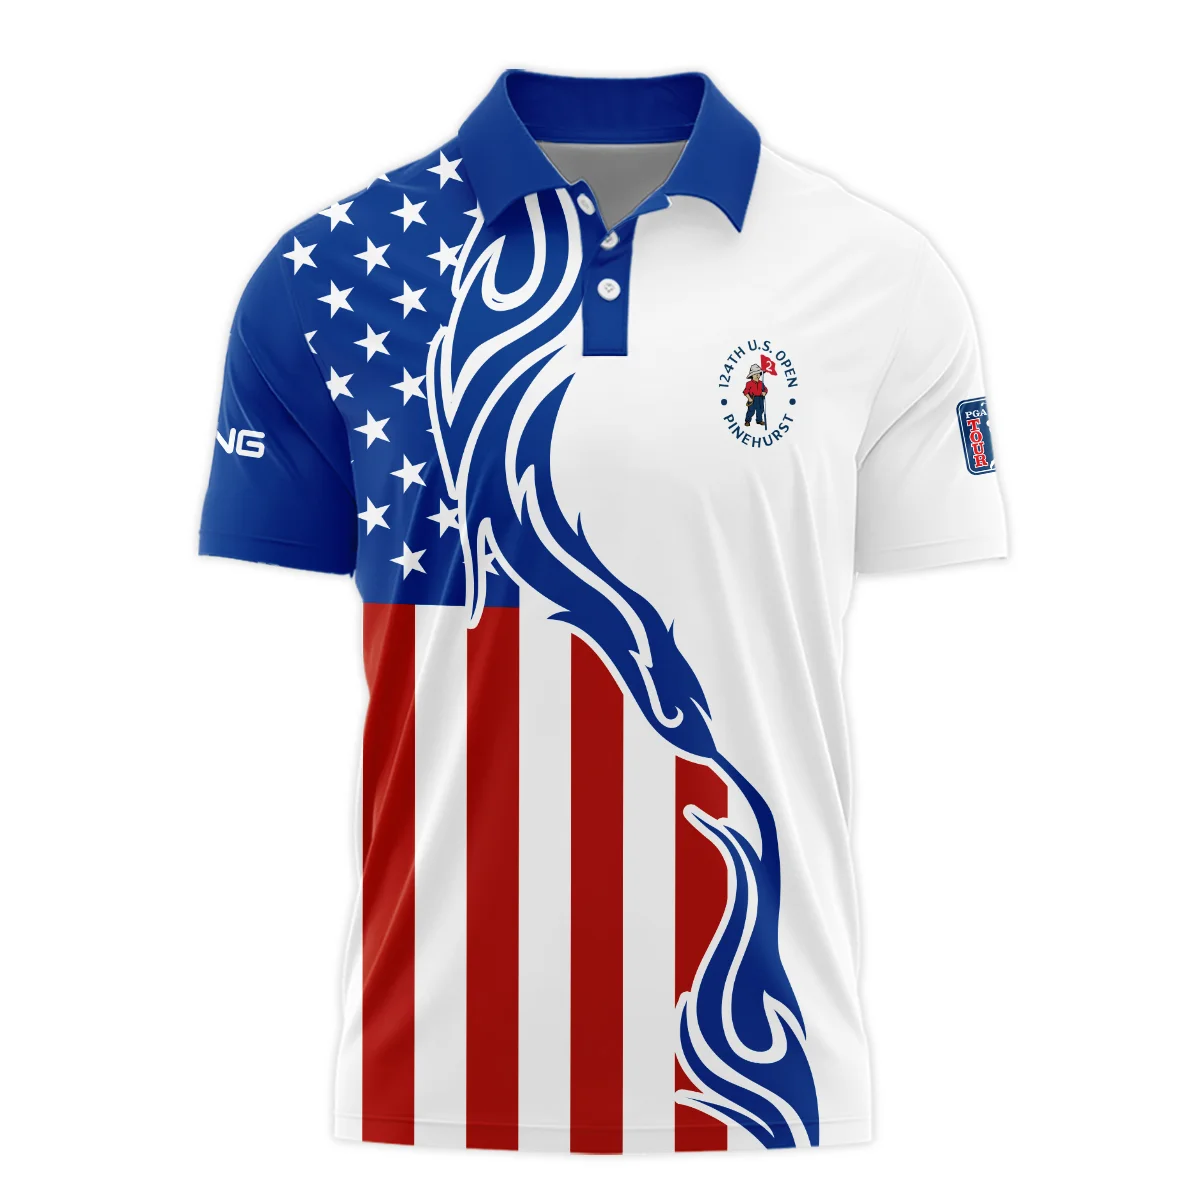 Golf Sport Ping 124th U.S. Open Pinehurst Polo Shirt USA Flag Pattern Blue White All Over Print Polo Shirt For Men